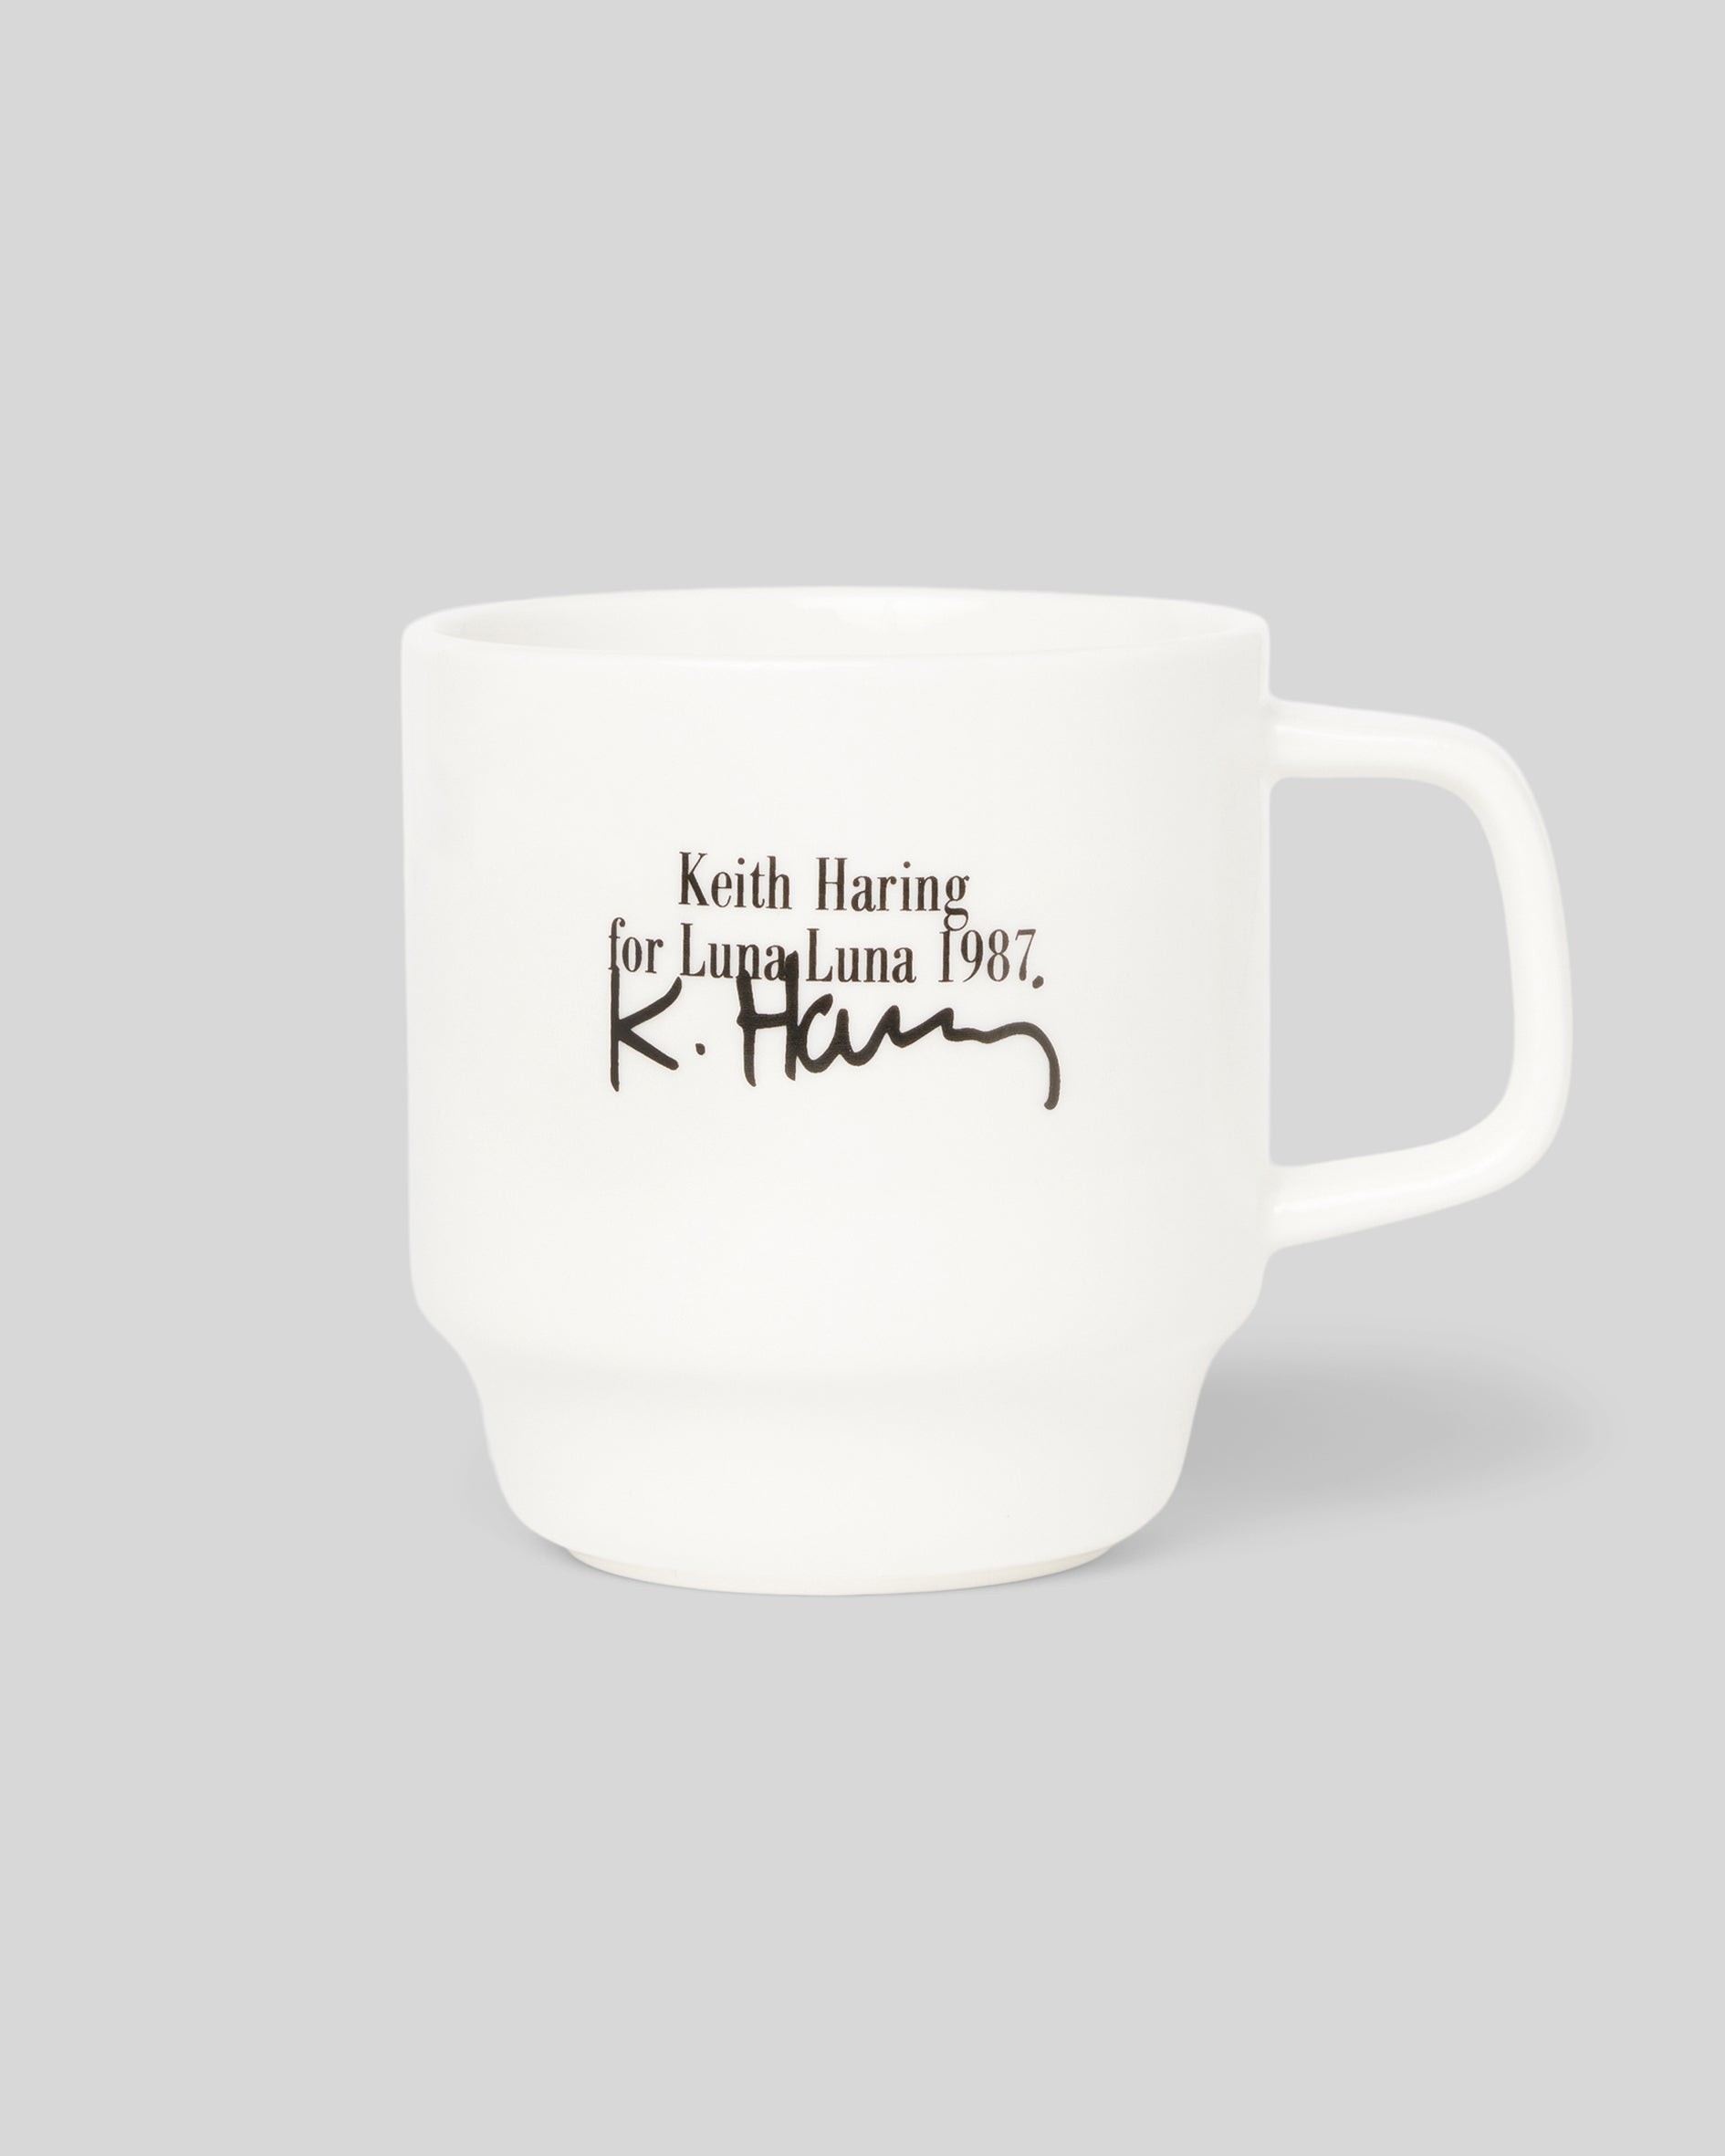 Rear photo of Haring Moon Mug showcasing Keith Haring signature